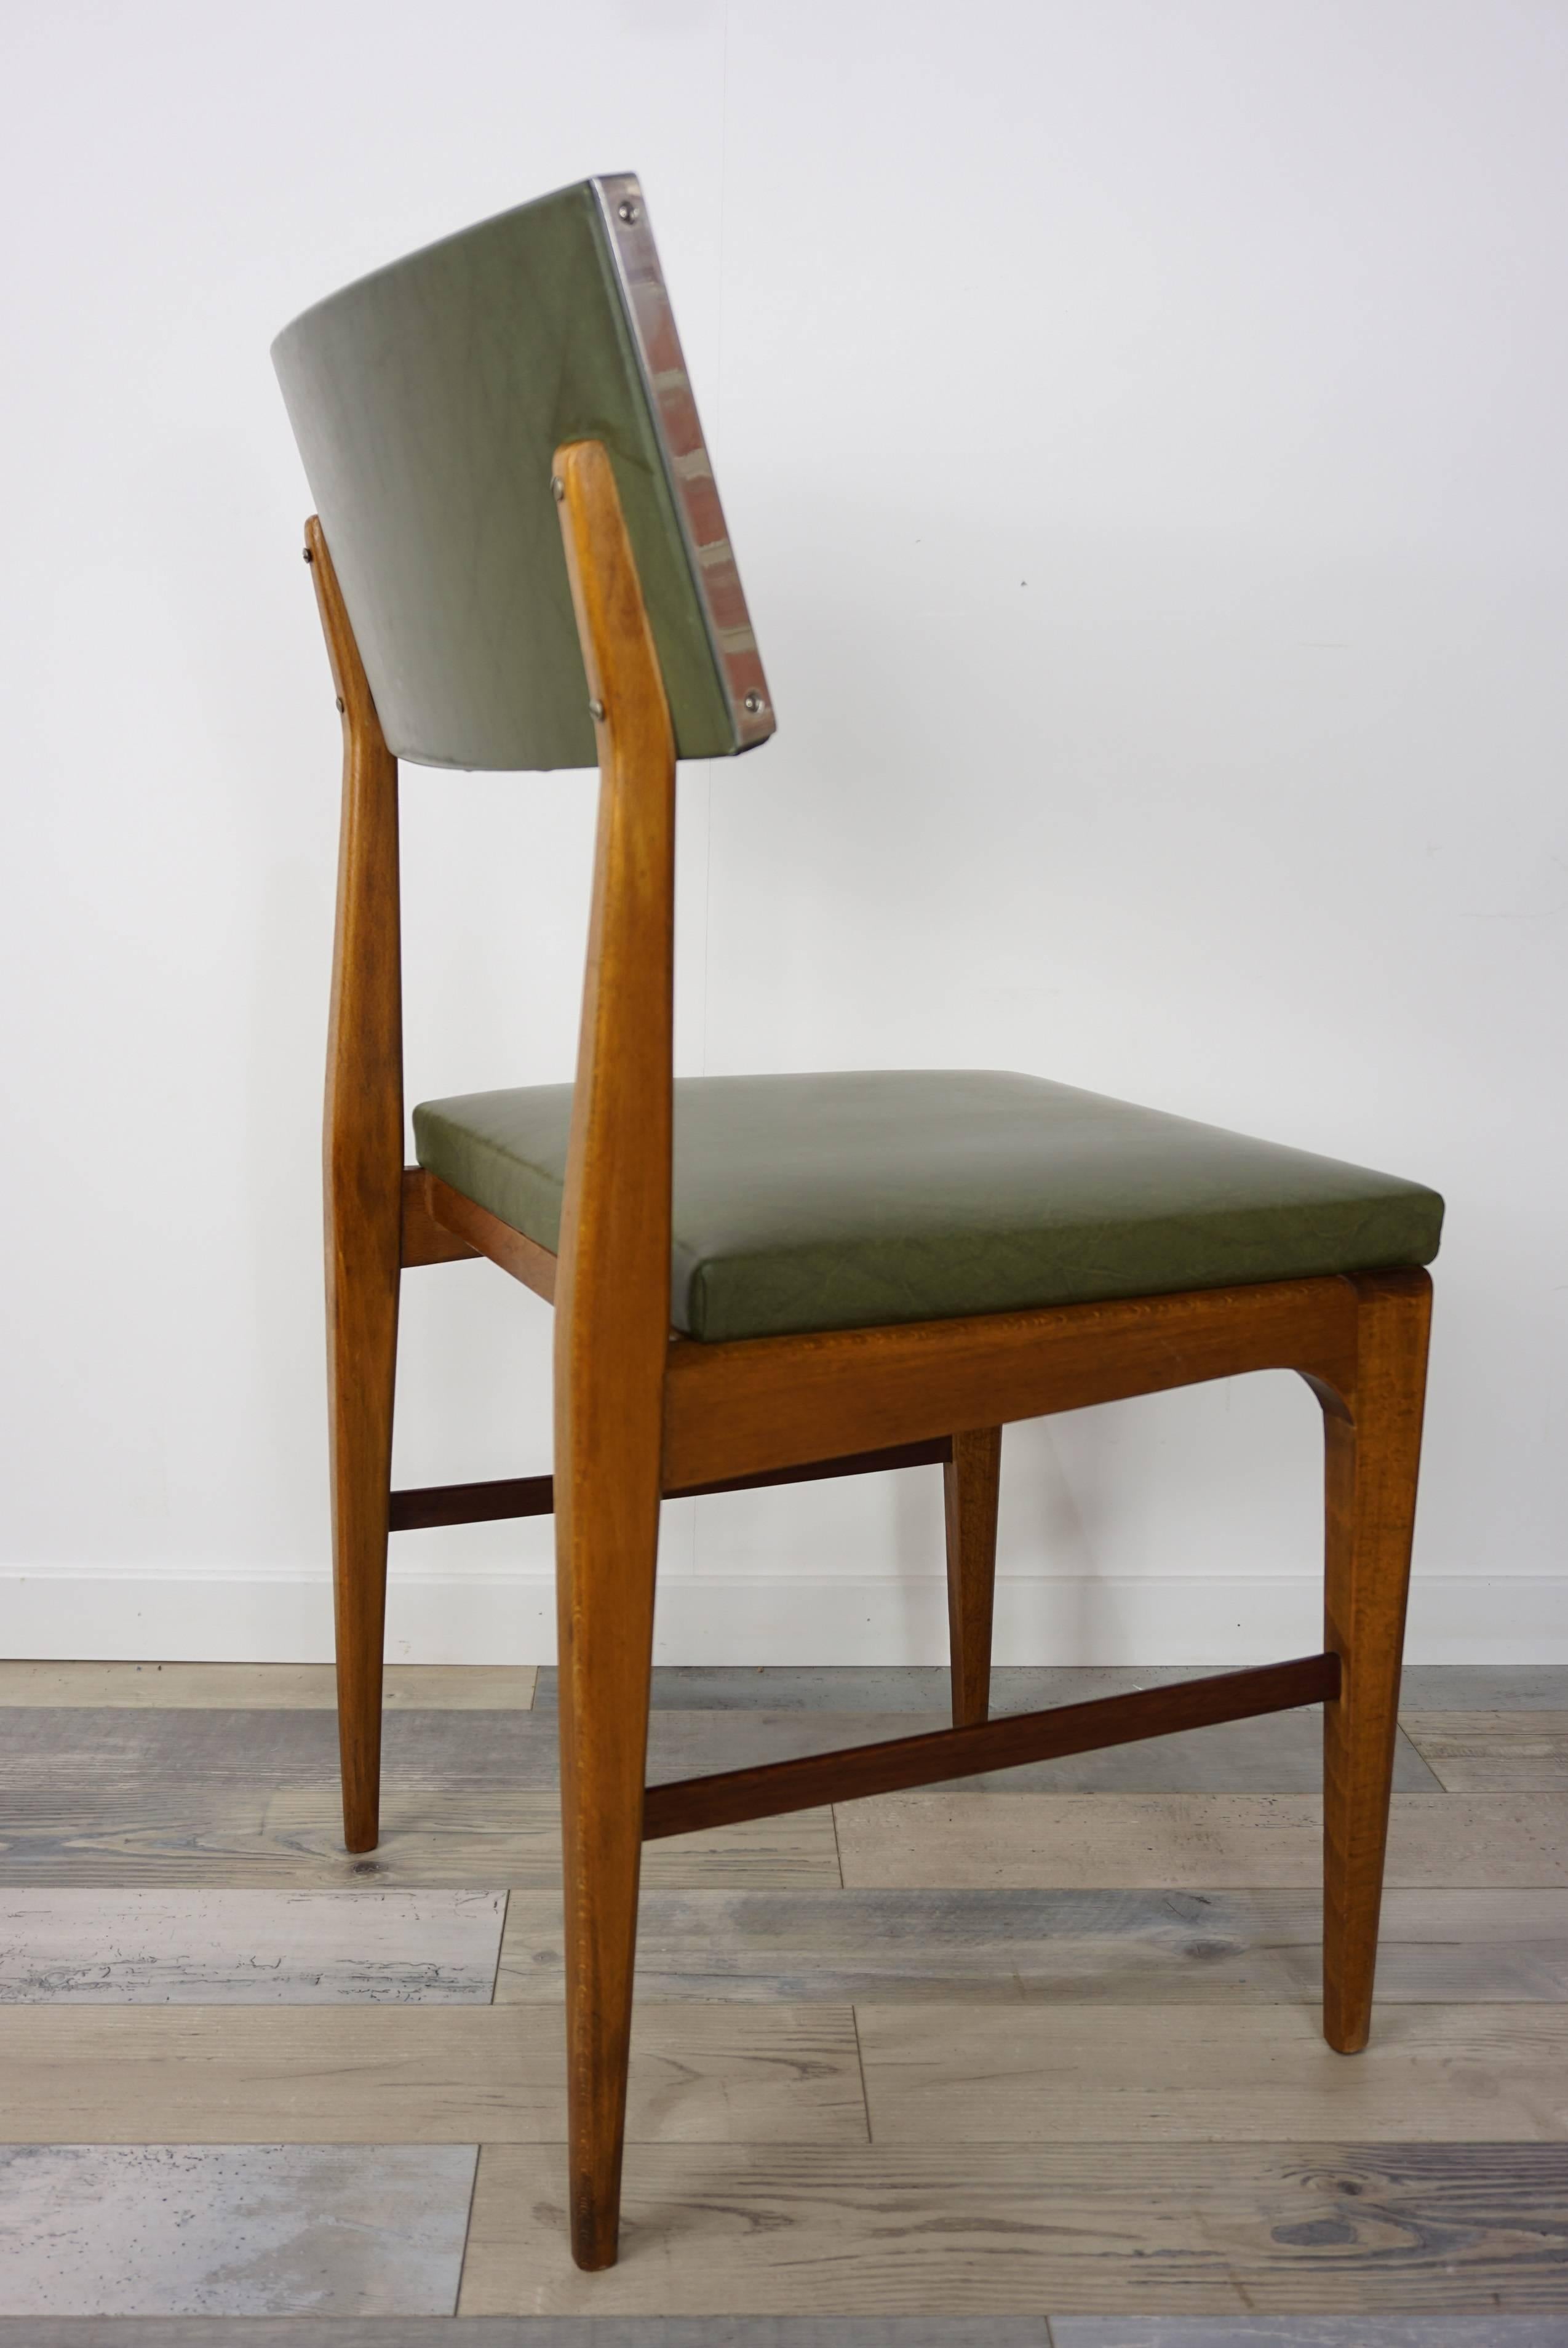 Scandinavian Modern Wooden Teak and Green Faux Leather Scandinavian Style Dutch Design Chair